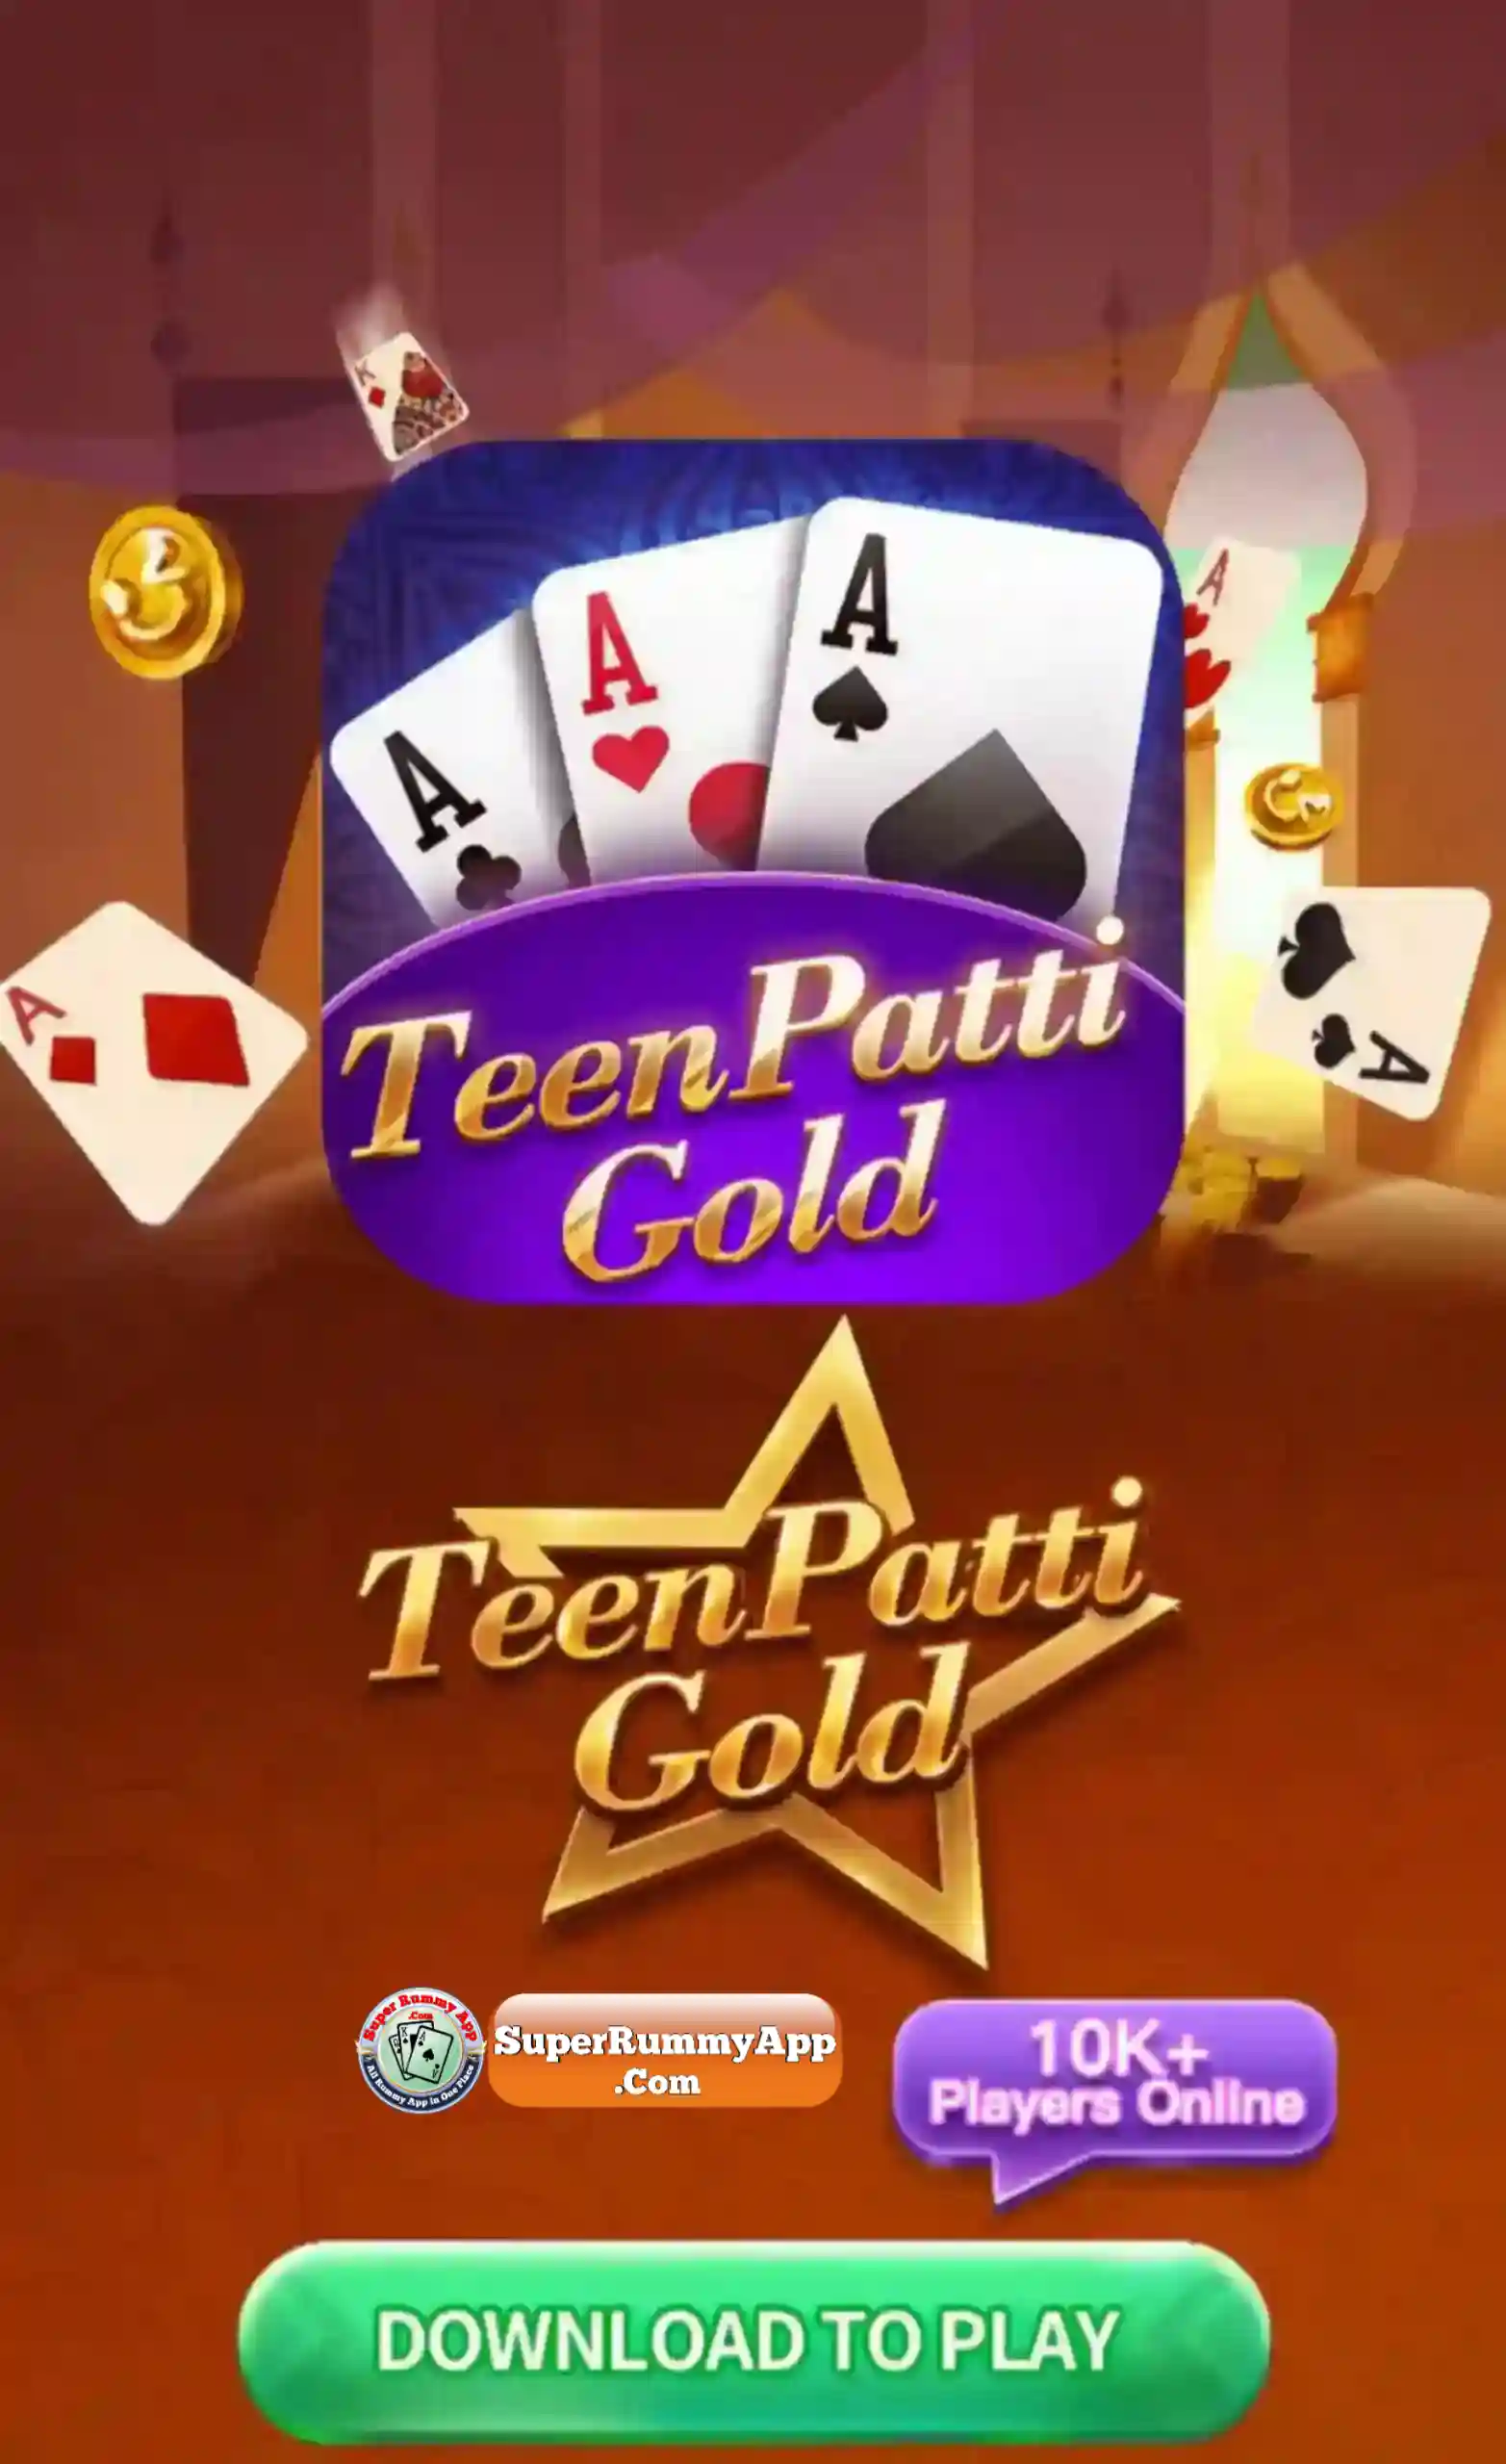 Teen Patti Gold App Download - Super Teen Patti App